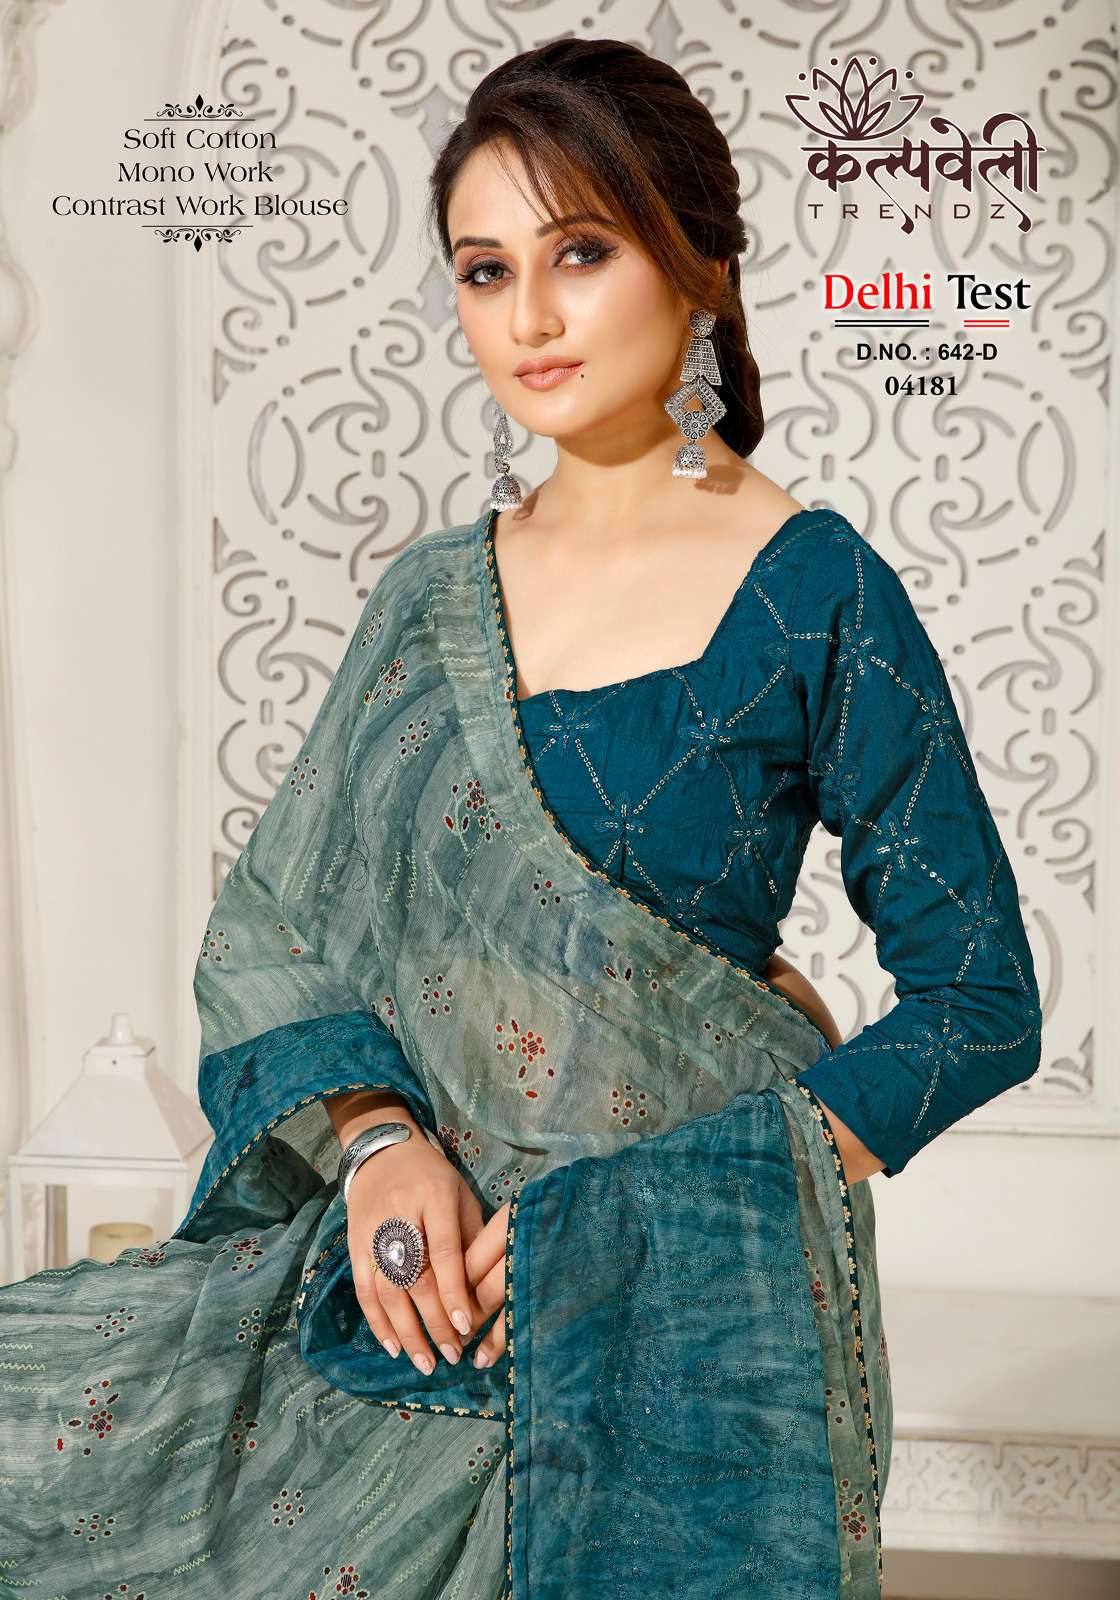 kalpavelly trendz delhi test 642 fancy mono work soft cotton saree supplier